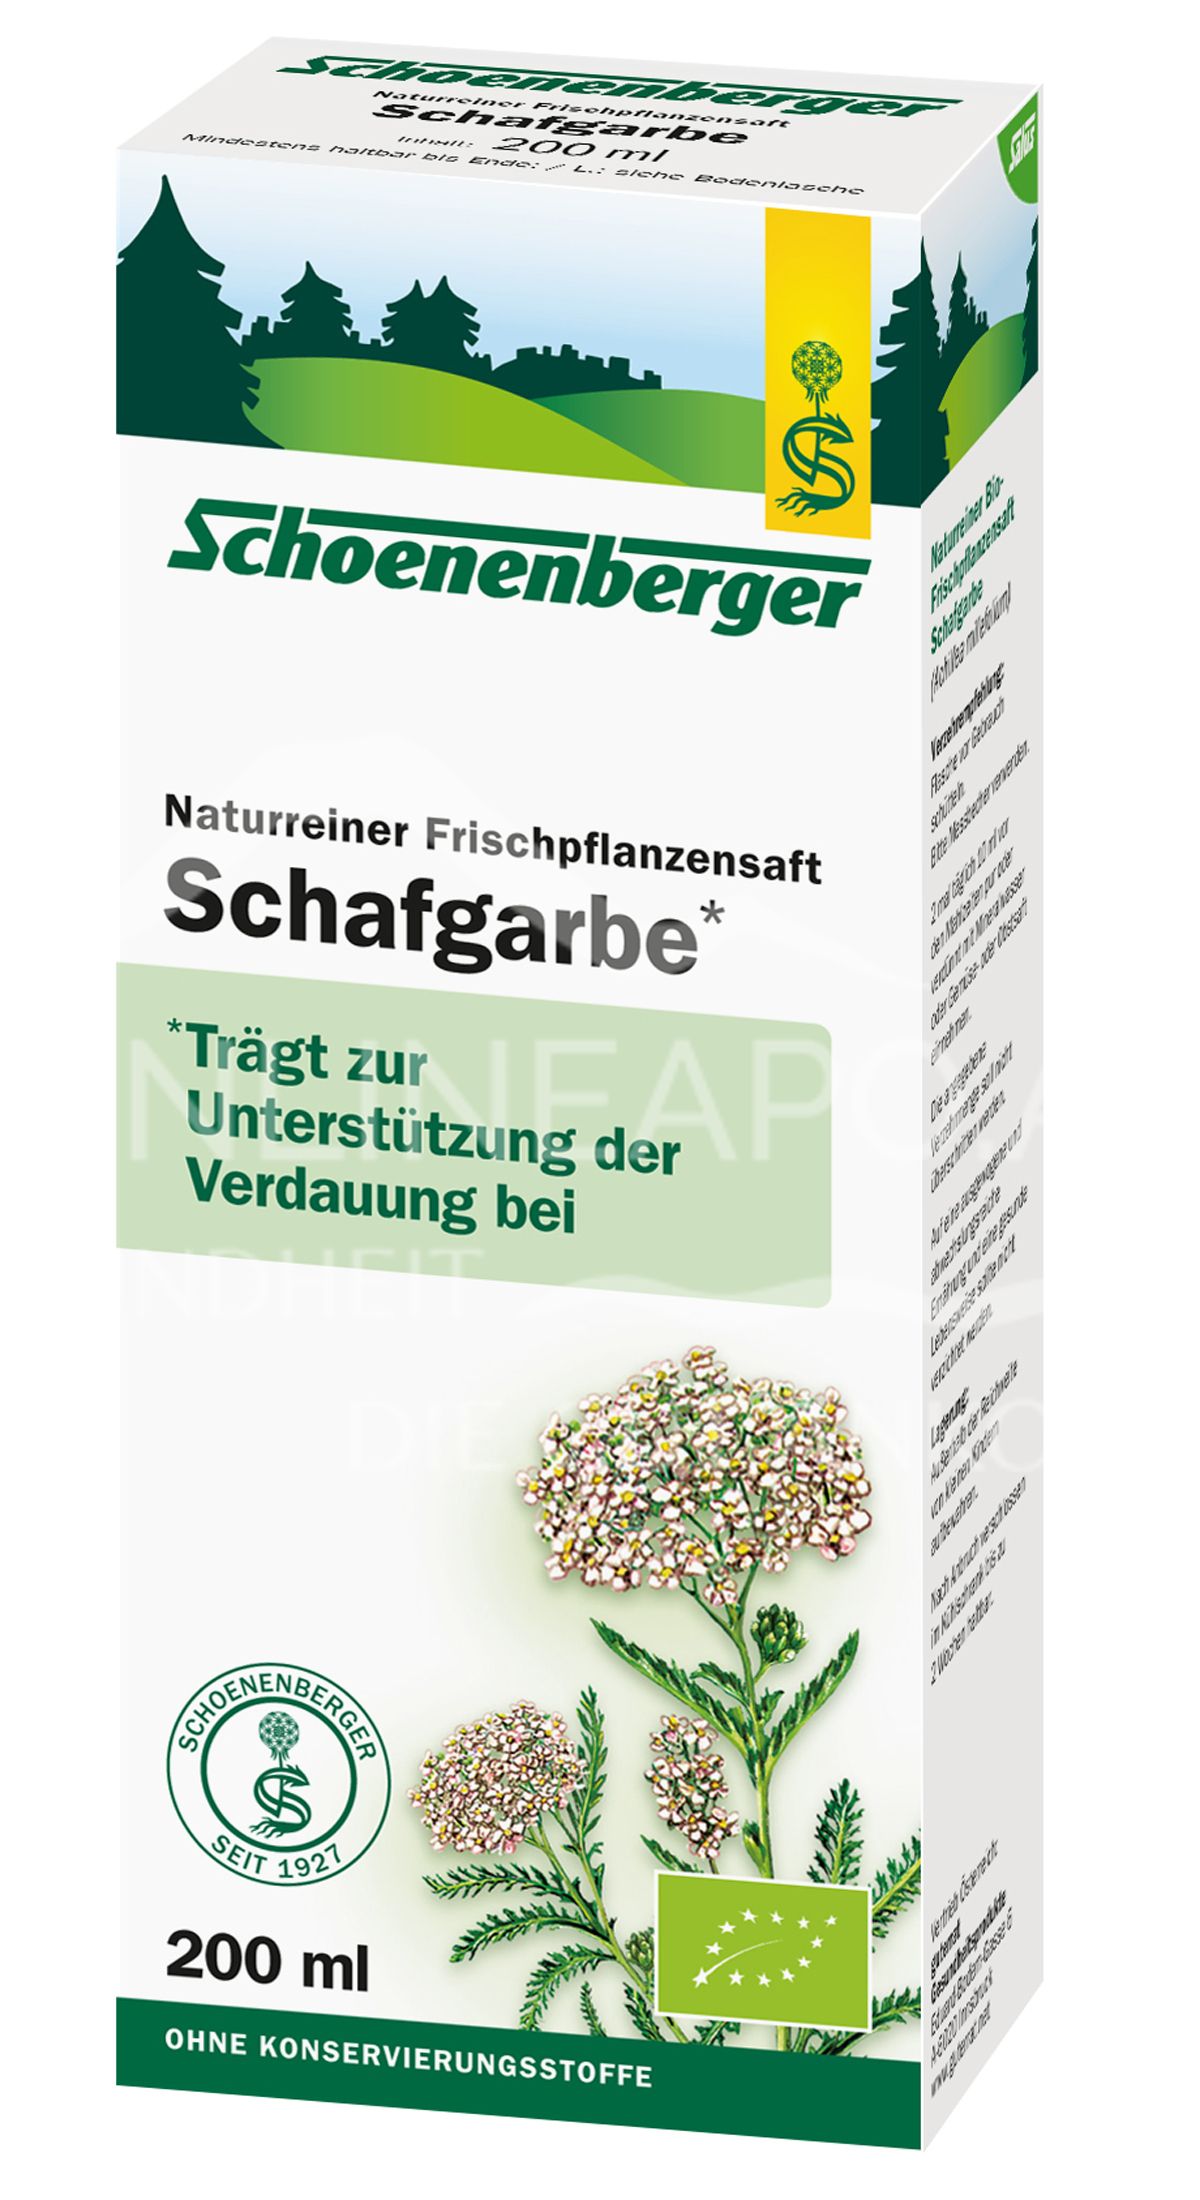 Schoenenberger Schafgarbe Naturreiner Frischpflanzensaft (BIO)